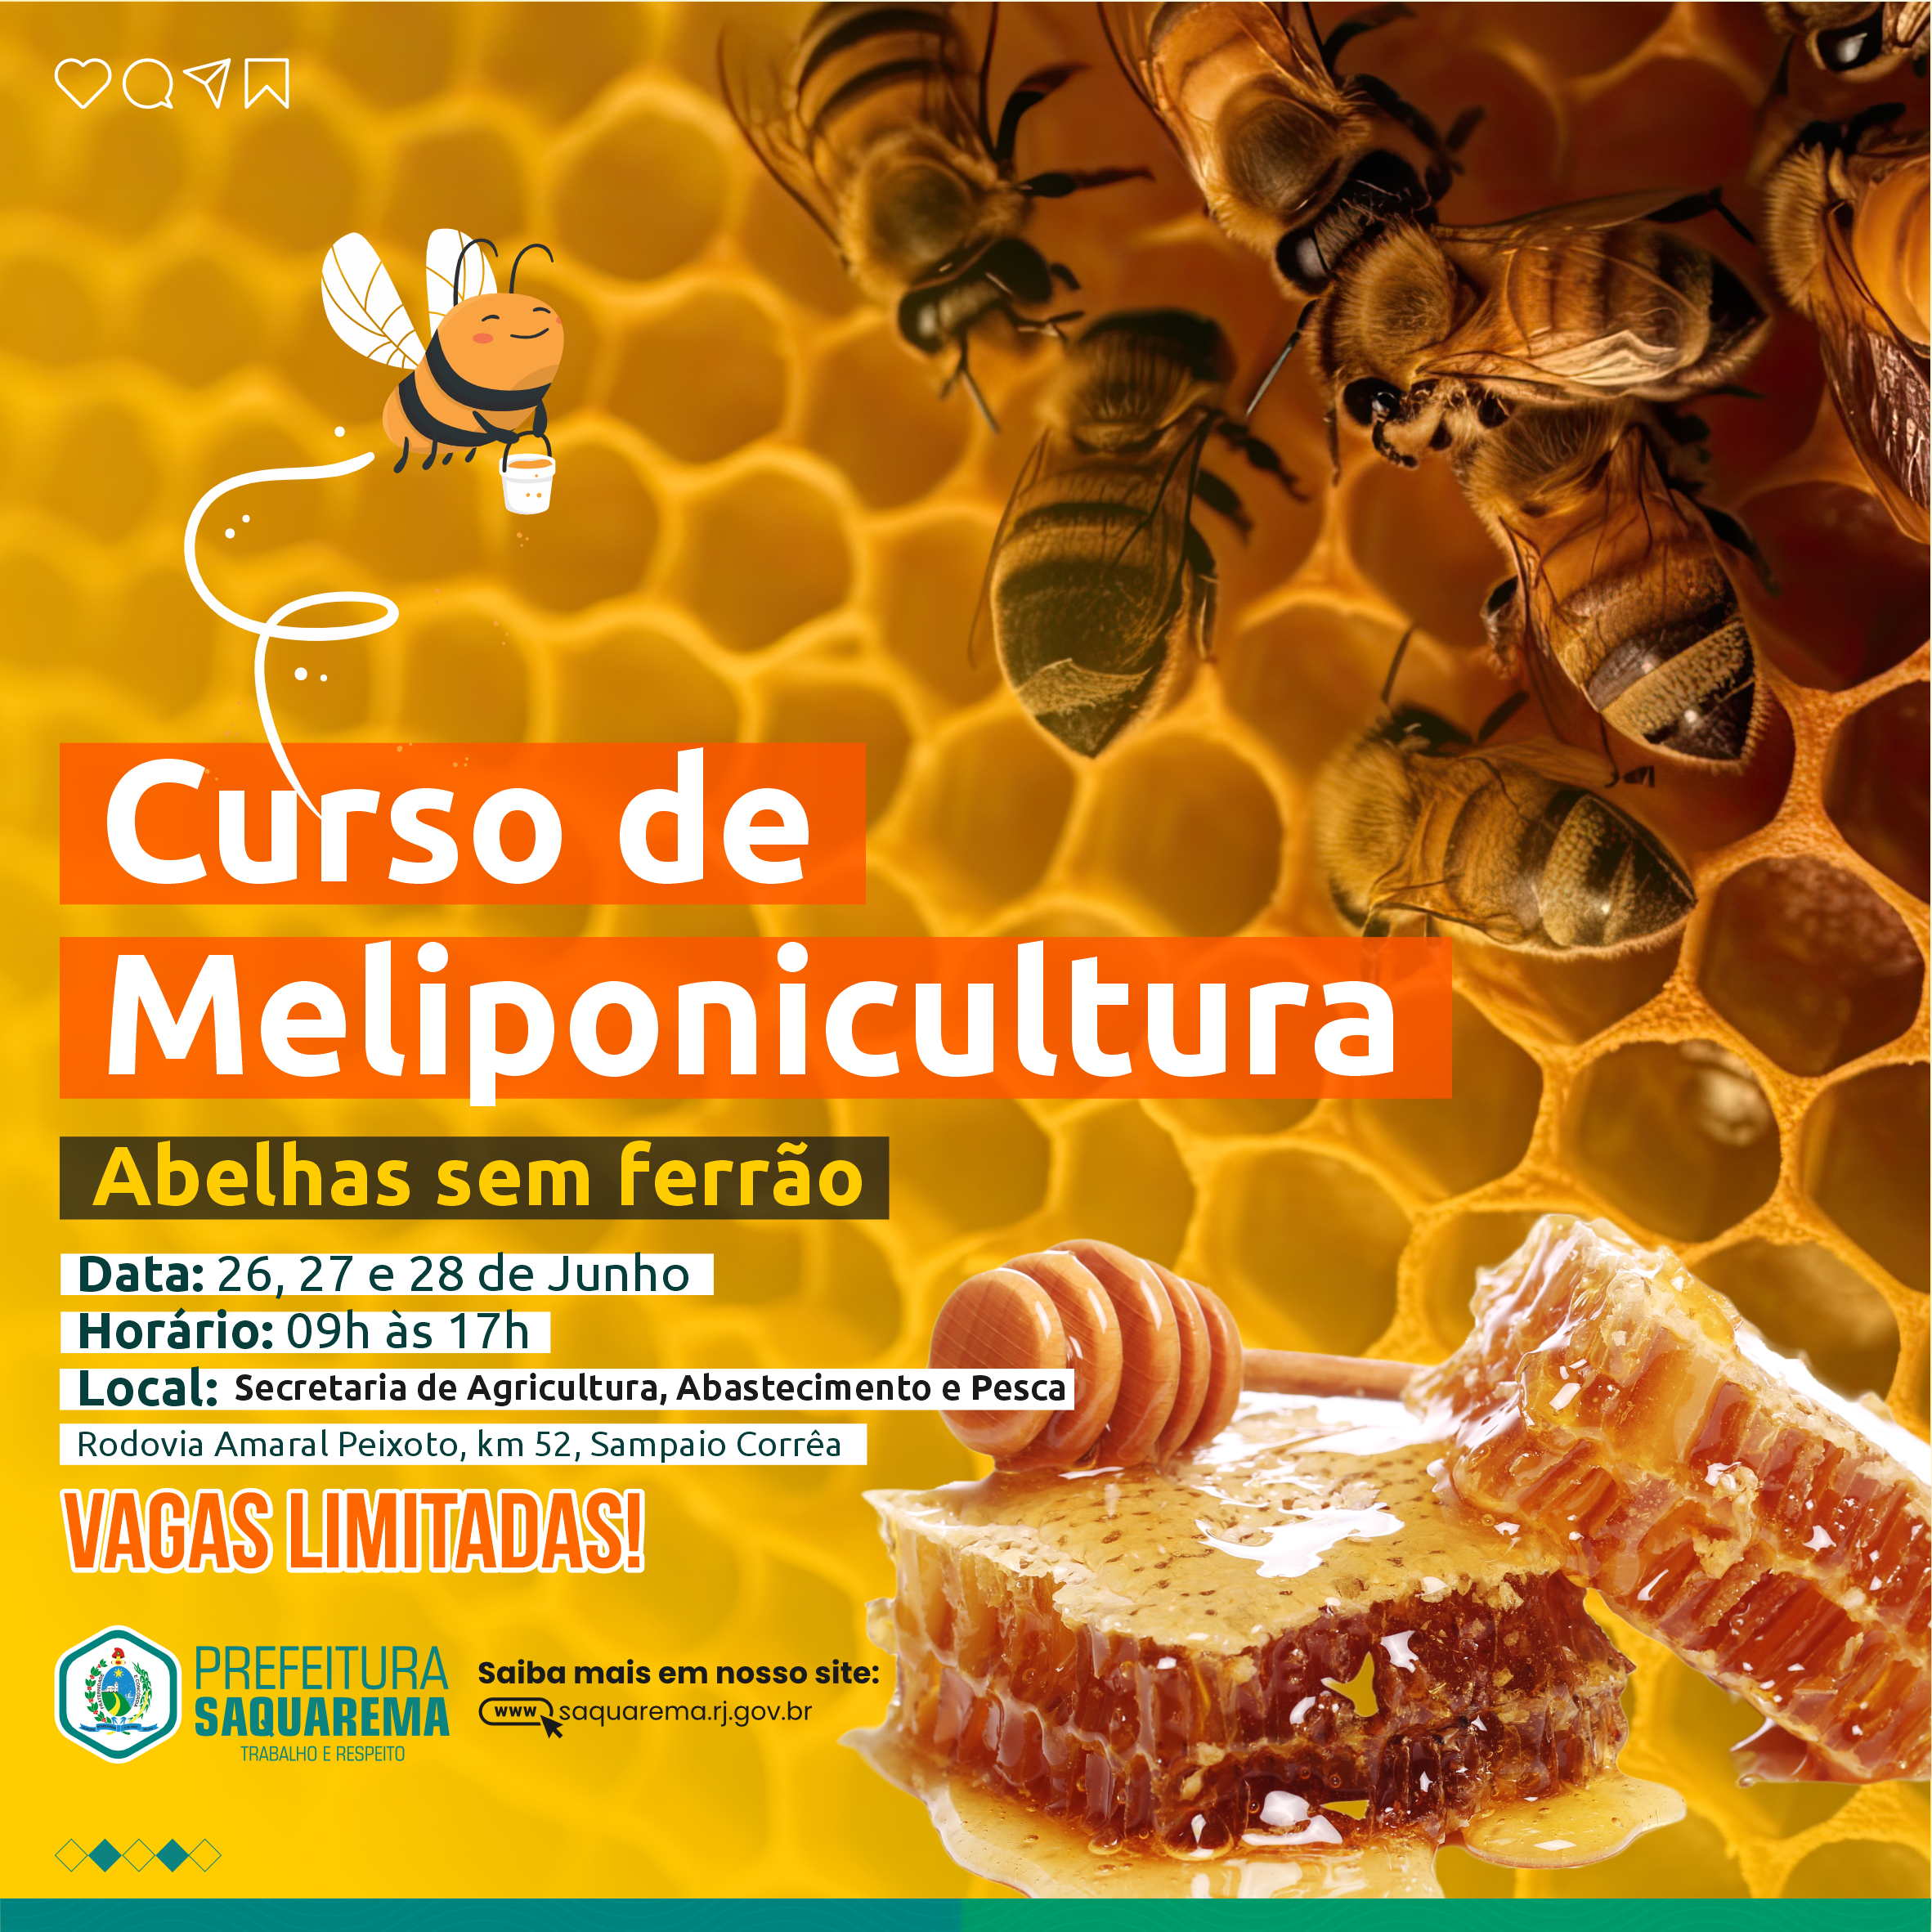 El Ayuntamiento de Saquarema ofrece cursos de meliponicultura